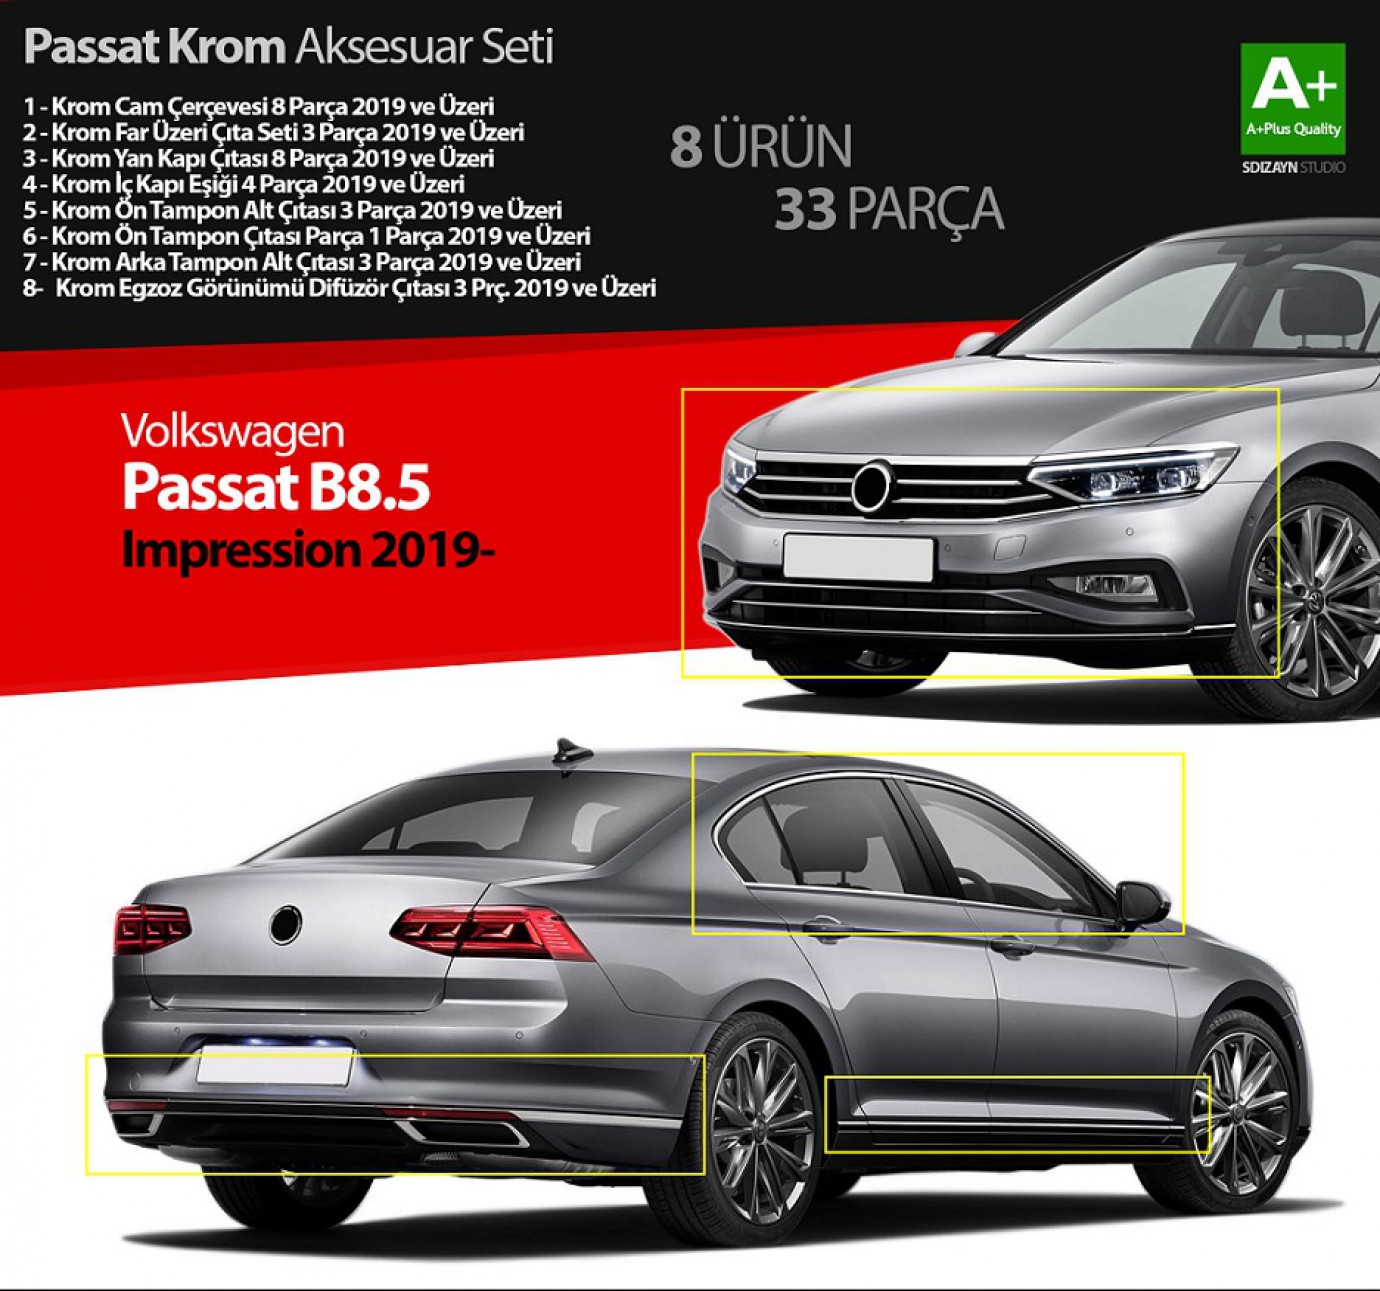 VW Passat B8.5 Impression Krom Aksesuar Seti 33 Parça A+Kalite